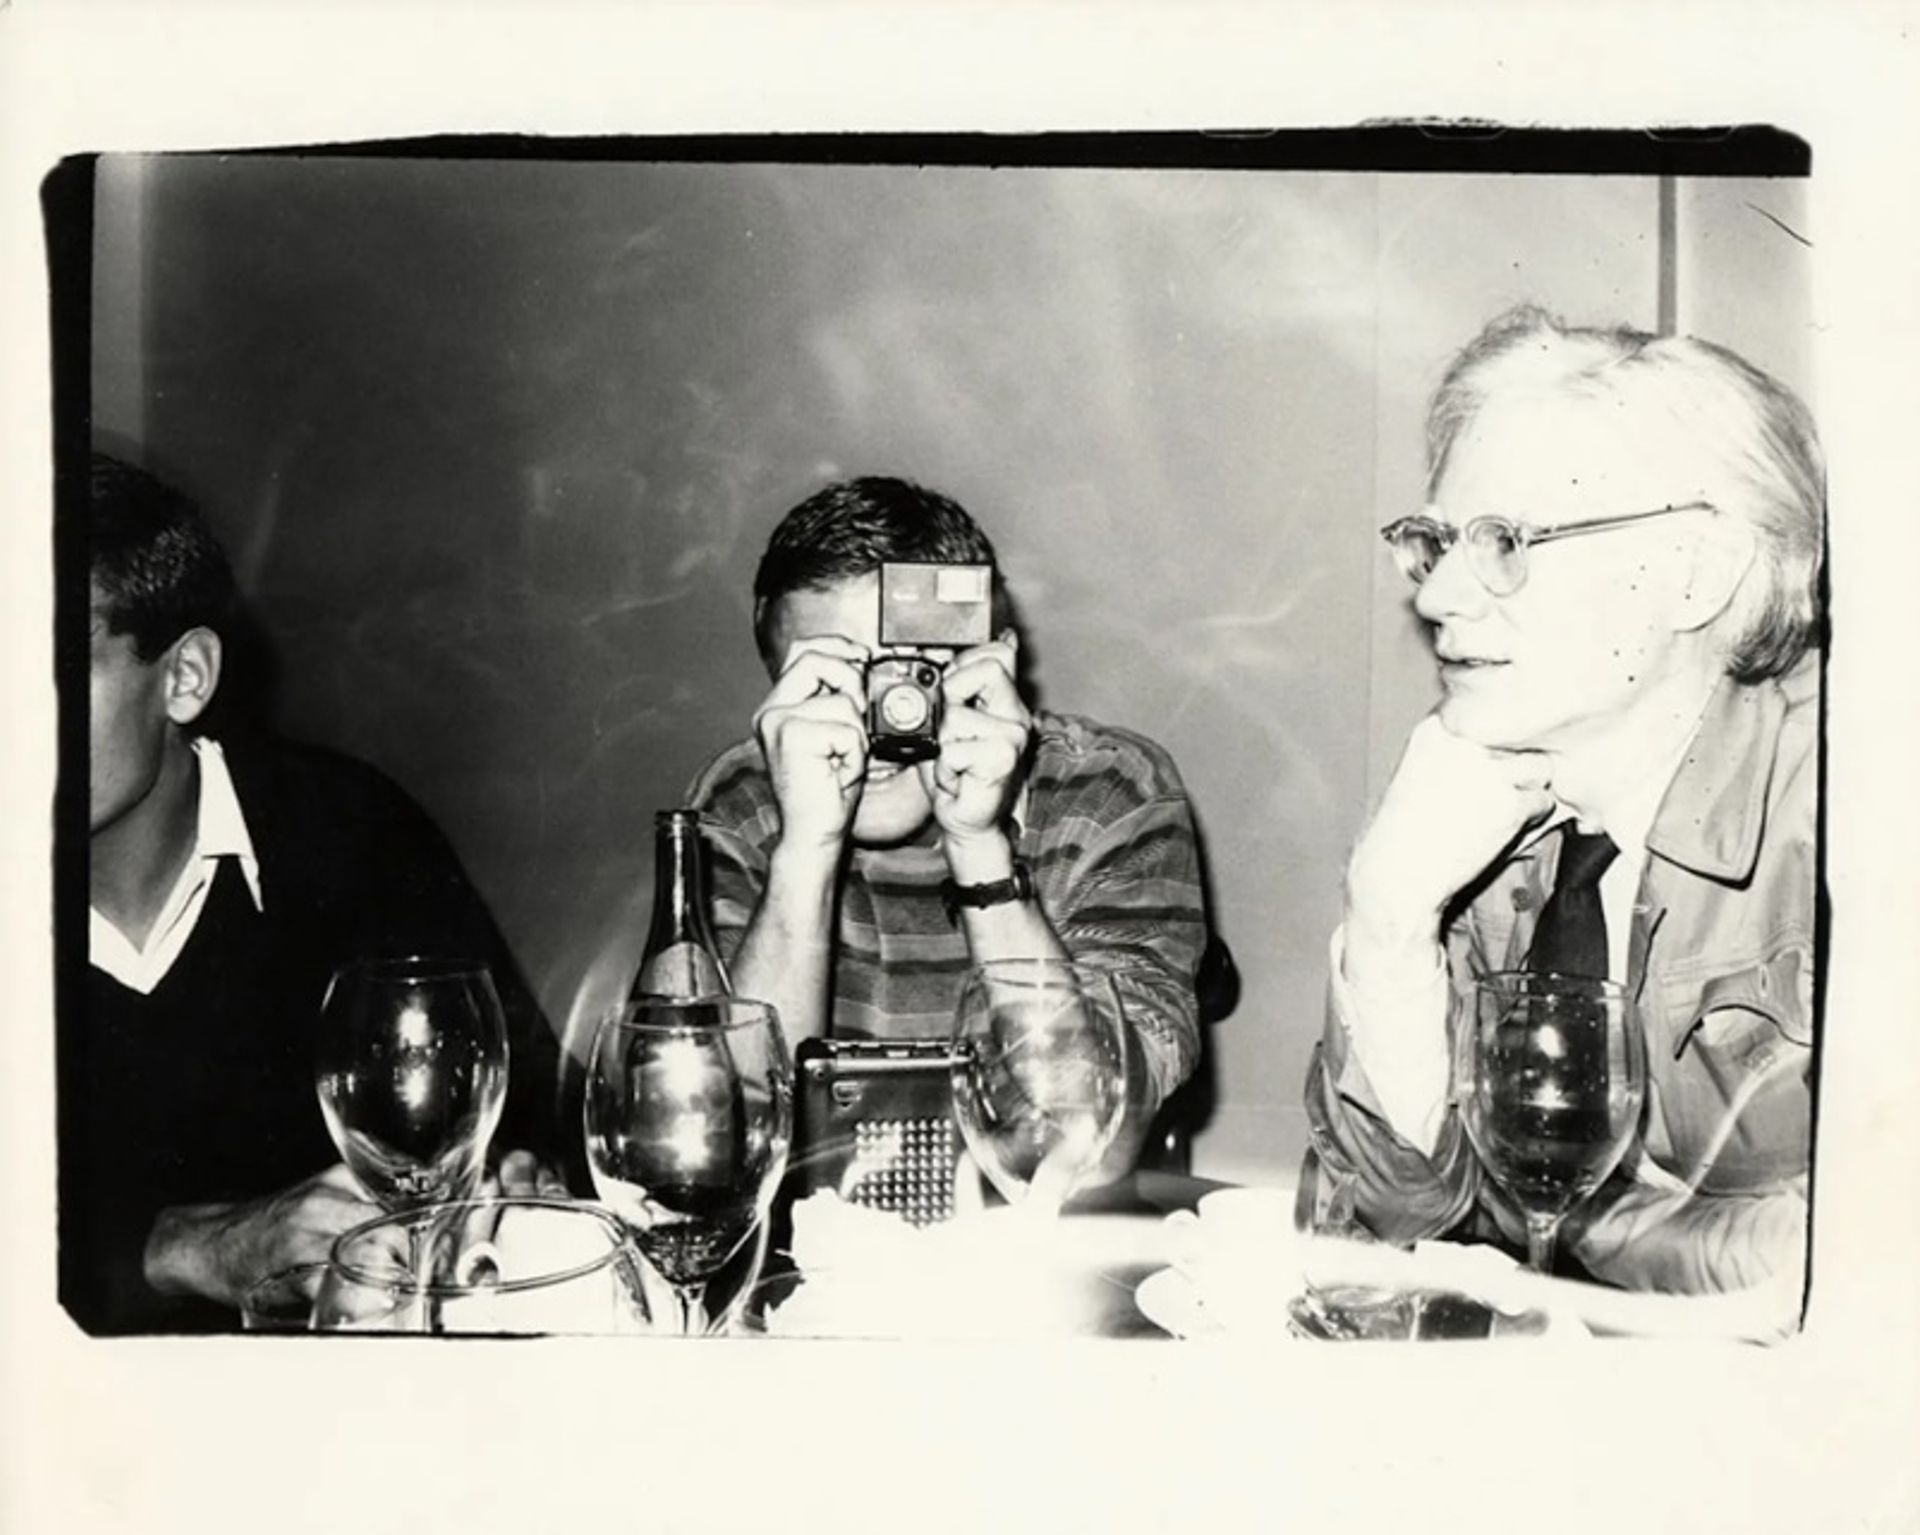 אנדי וורהול, דיוקן עצמי עם תומס עמאן, 1979

© The Andy Warhol Foundation for the Visual Arts, Inc.